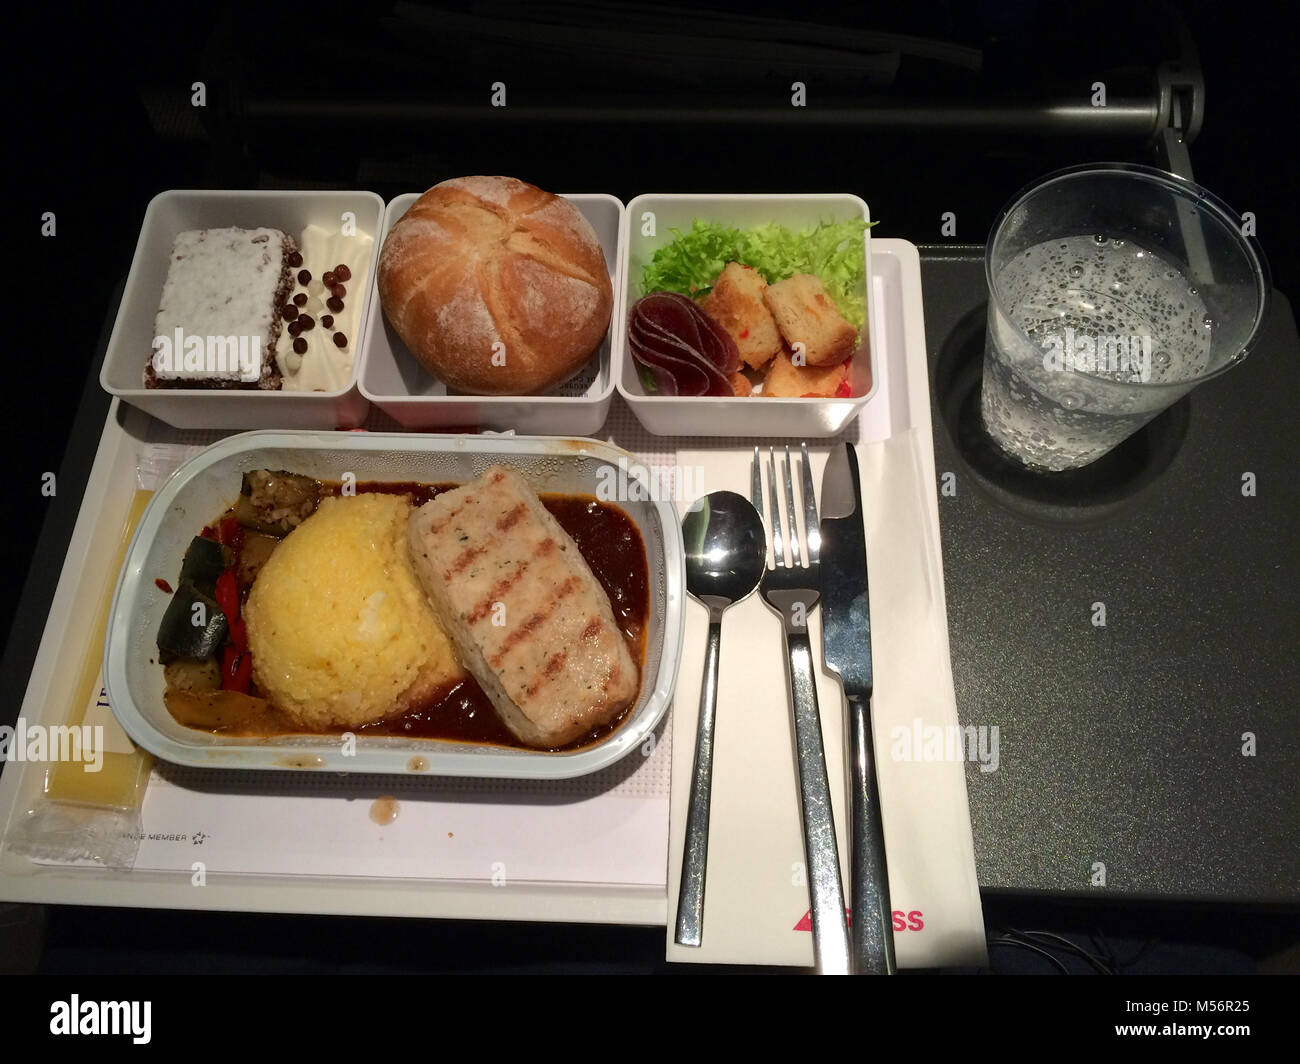 Zürich, Schweiz - Mar 31, 2015: Auf der Flucht warme Mahlzeit der Swiss International Airline in der Economy Class, Abendessen Stockfoto